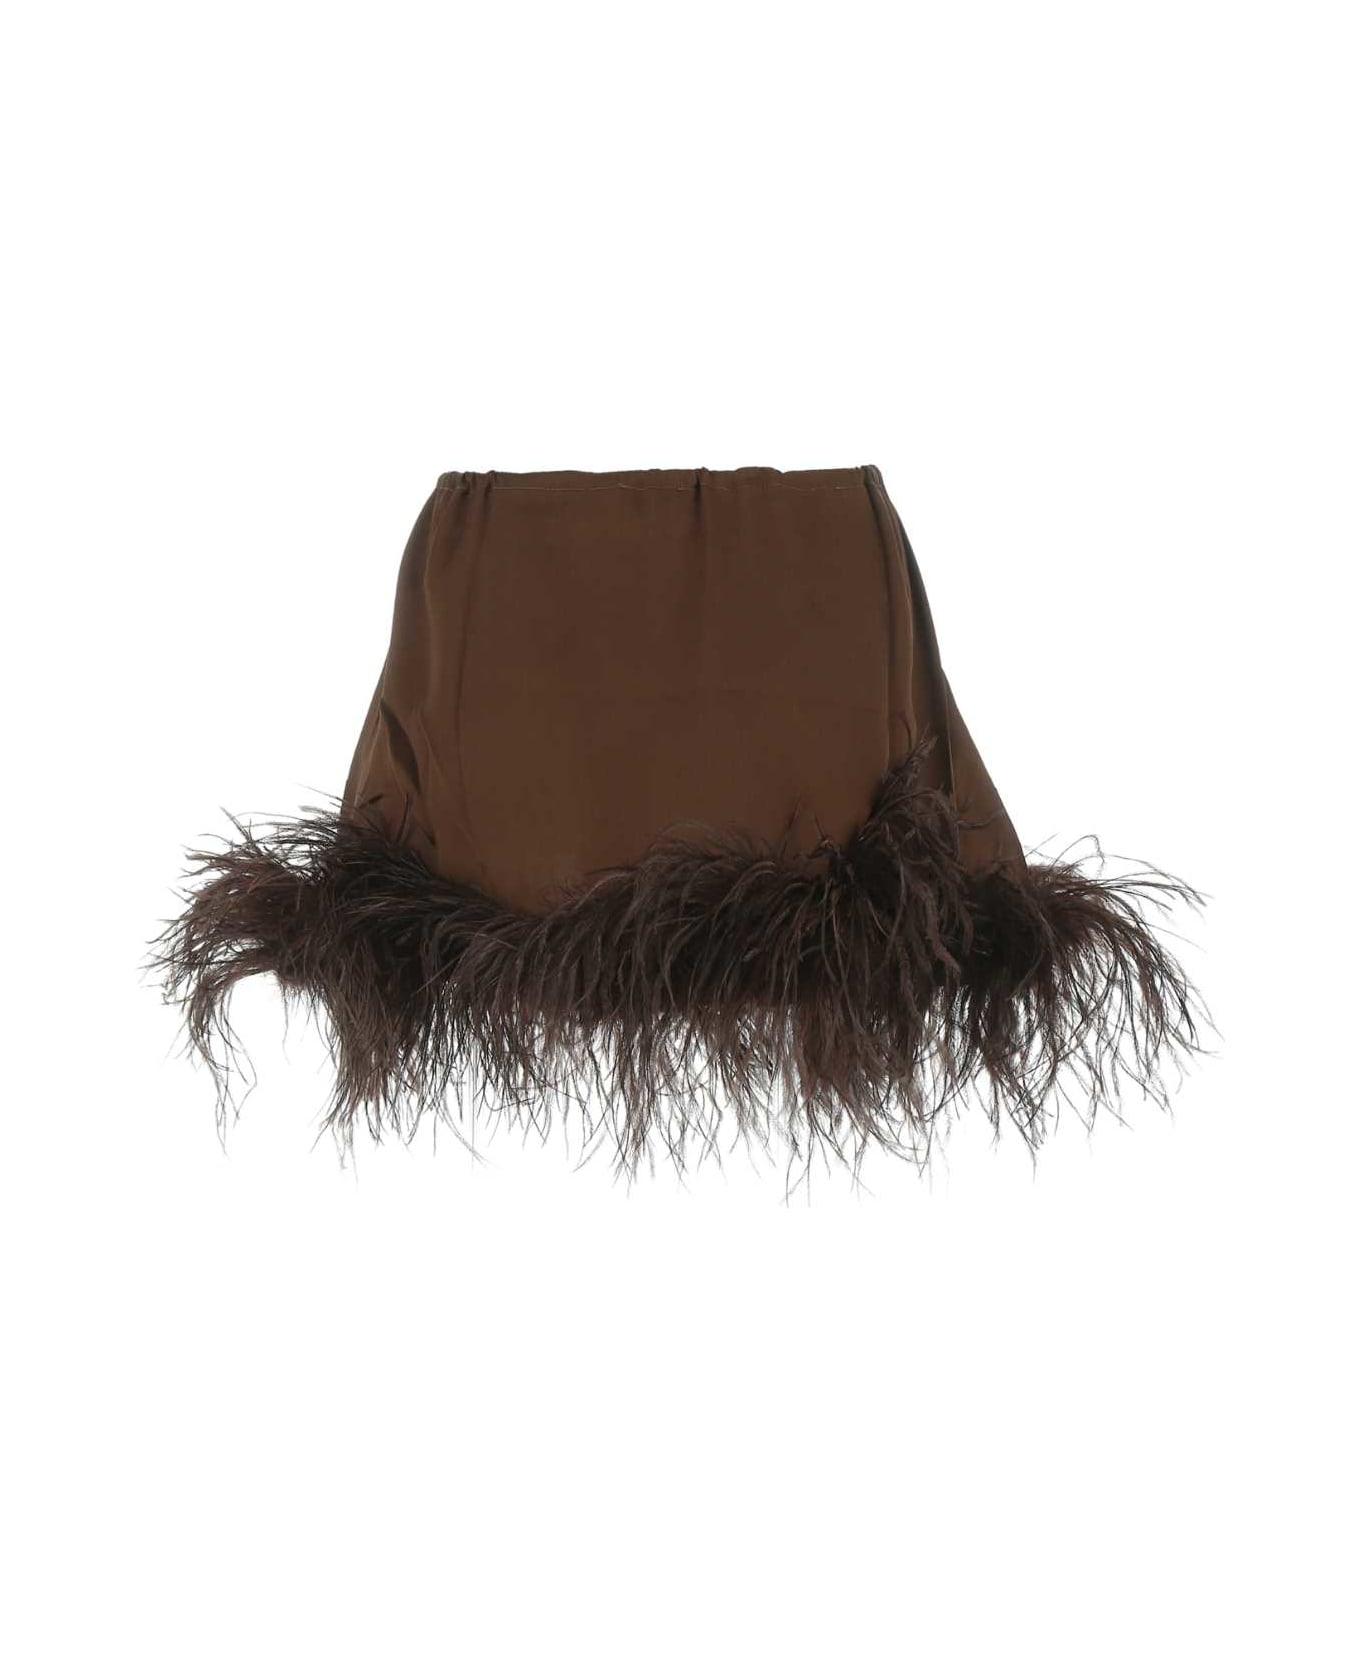 Oseree Brown Satin Lingerie Mini Skirt - BROWN ショーツ